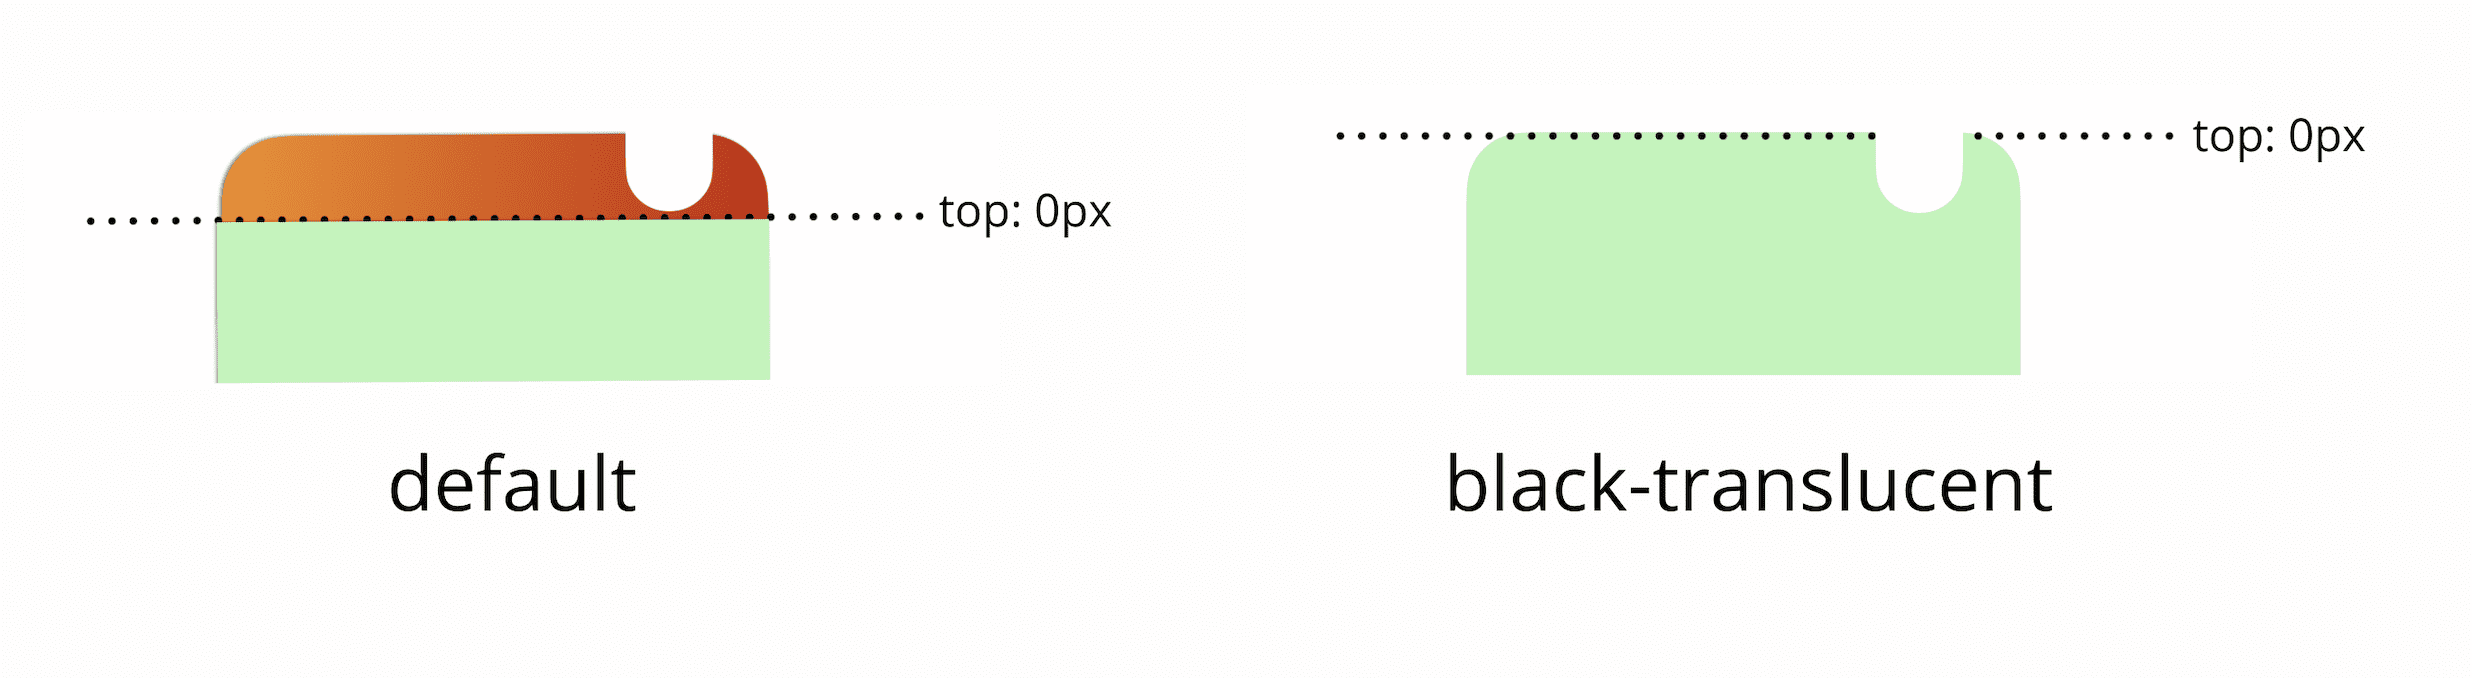 표시 영역의 상위 0픽셀은 기본적으로 상태 표시줄 아래에 있습니다. 검은색 반투명 메타 태그를 추가하면 표시 영역의 상위 0픽셀이 화면의 실제 상단과 일치하게 됩니다.